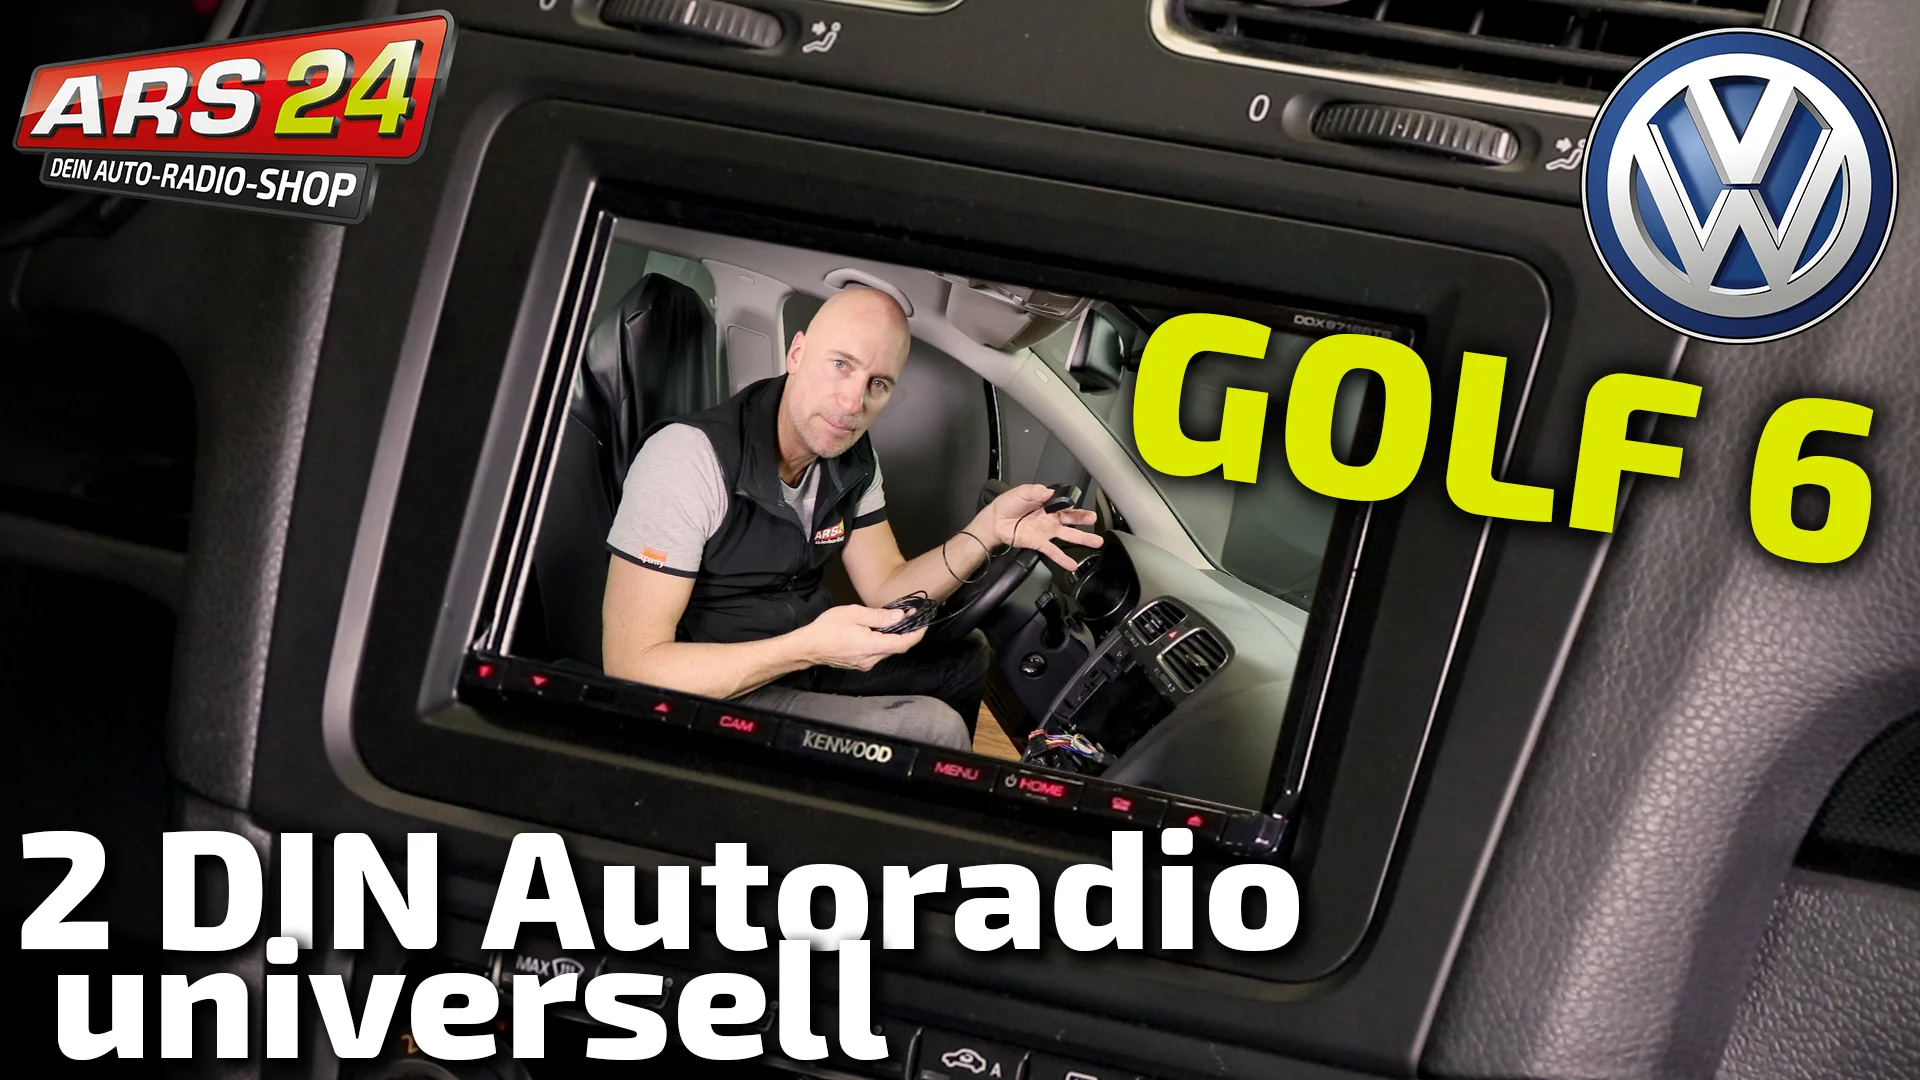 VW Golf 6 Autoradio mit unglaublich großem Bildschirm einbauen